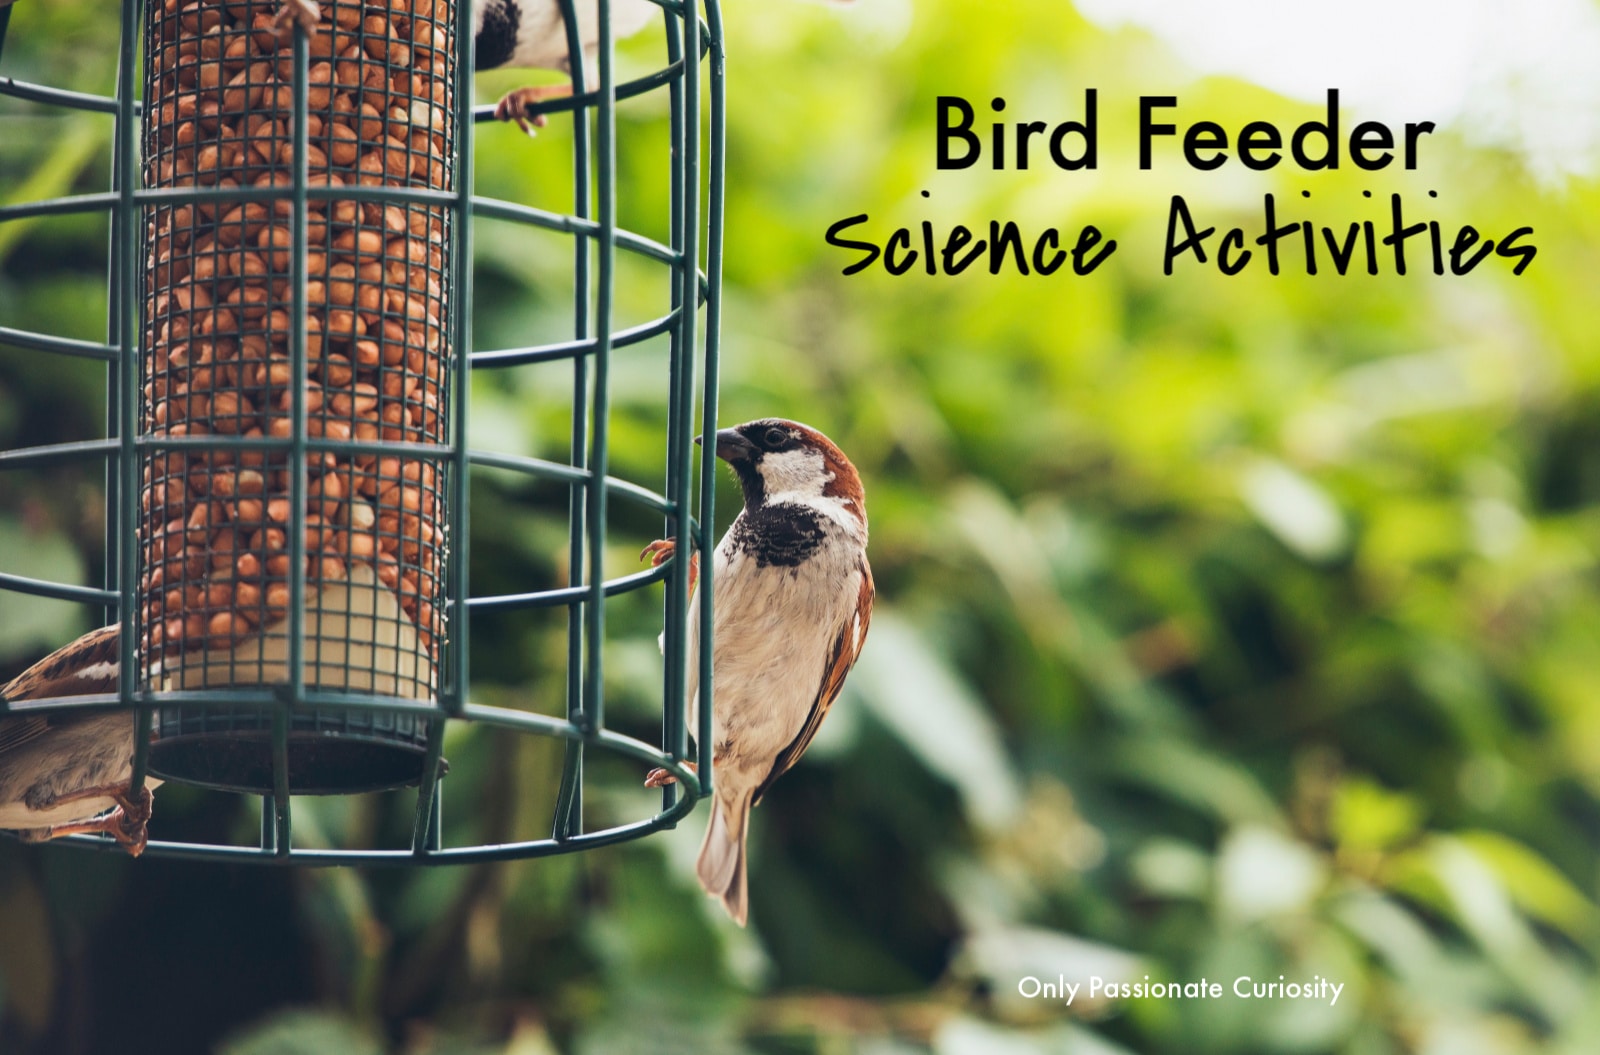 bird at bird feeder